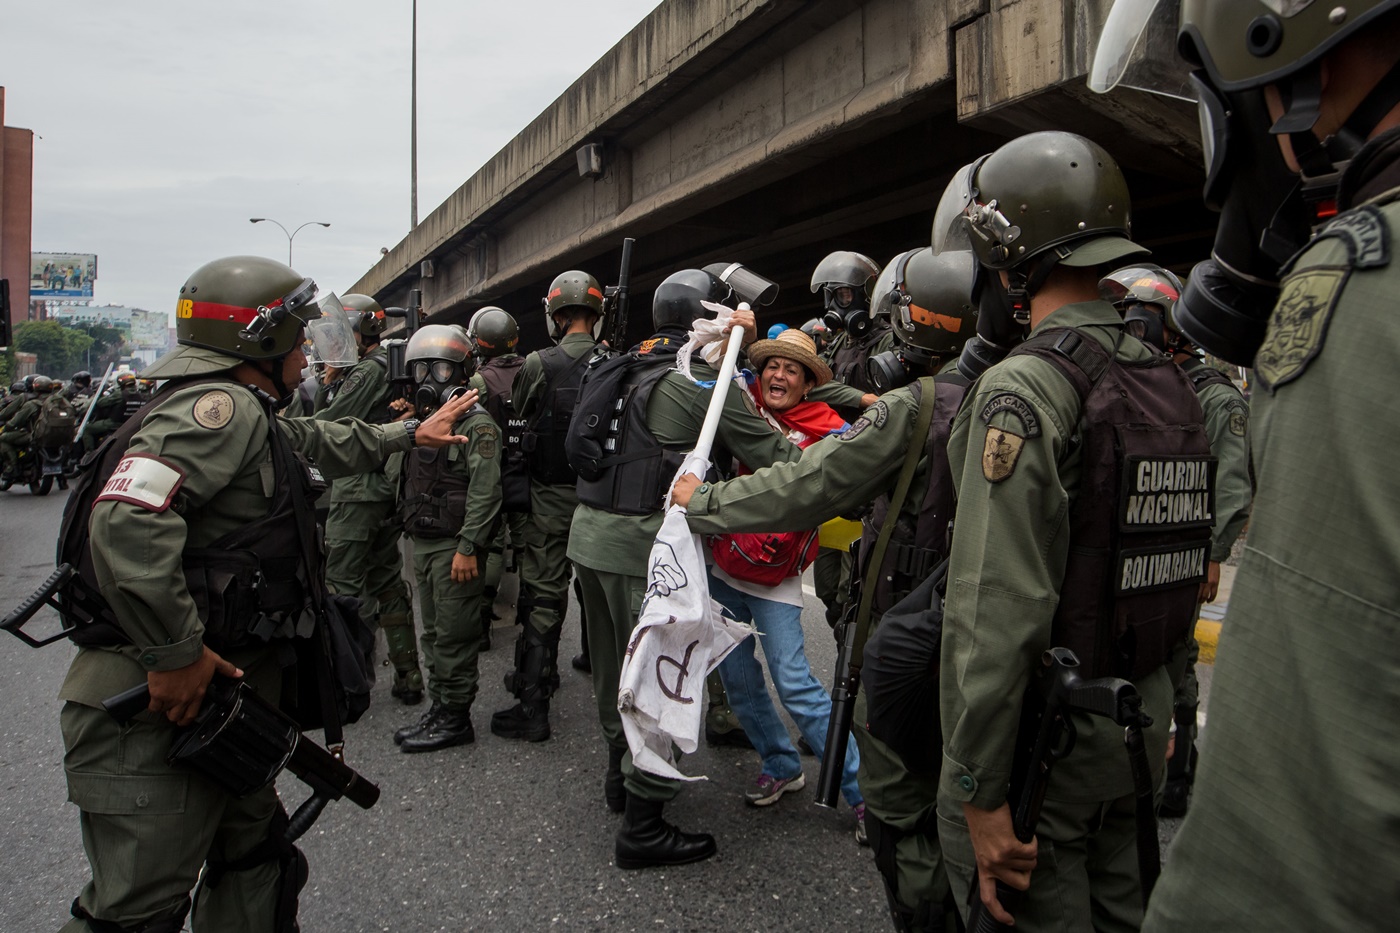 CAR014. CARACAS (VENEZUELA), 03/05/2017 - Militares retiran a una mujer (c) que bloqueaba el paso de una tanqueta de la Guardia Nacional durante una manifestación encabezada por diputados opositores hoy, miércoles 3 de mayo de 2017, en Caracas (Venezuela). La Guardia Nacional Bolivariana (GNB, policía militarizada) de Venezuela dispersó hoy con gases lacrimógenos una movilización opositora en el este de Caracas que pretendía llegar hasta la sede de la Asamblea Nacional (AN, Parlamento), ubicada en el centro de la capital. EFE/MIGUEL GUTIERREZ